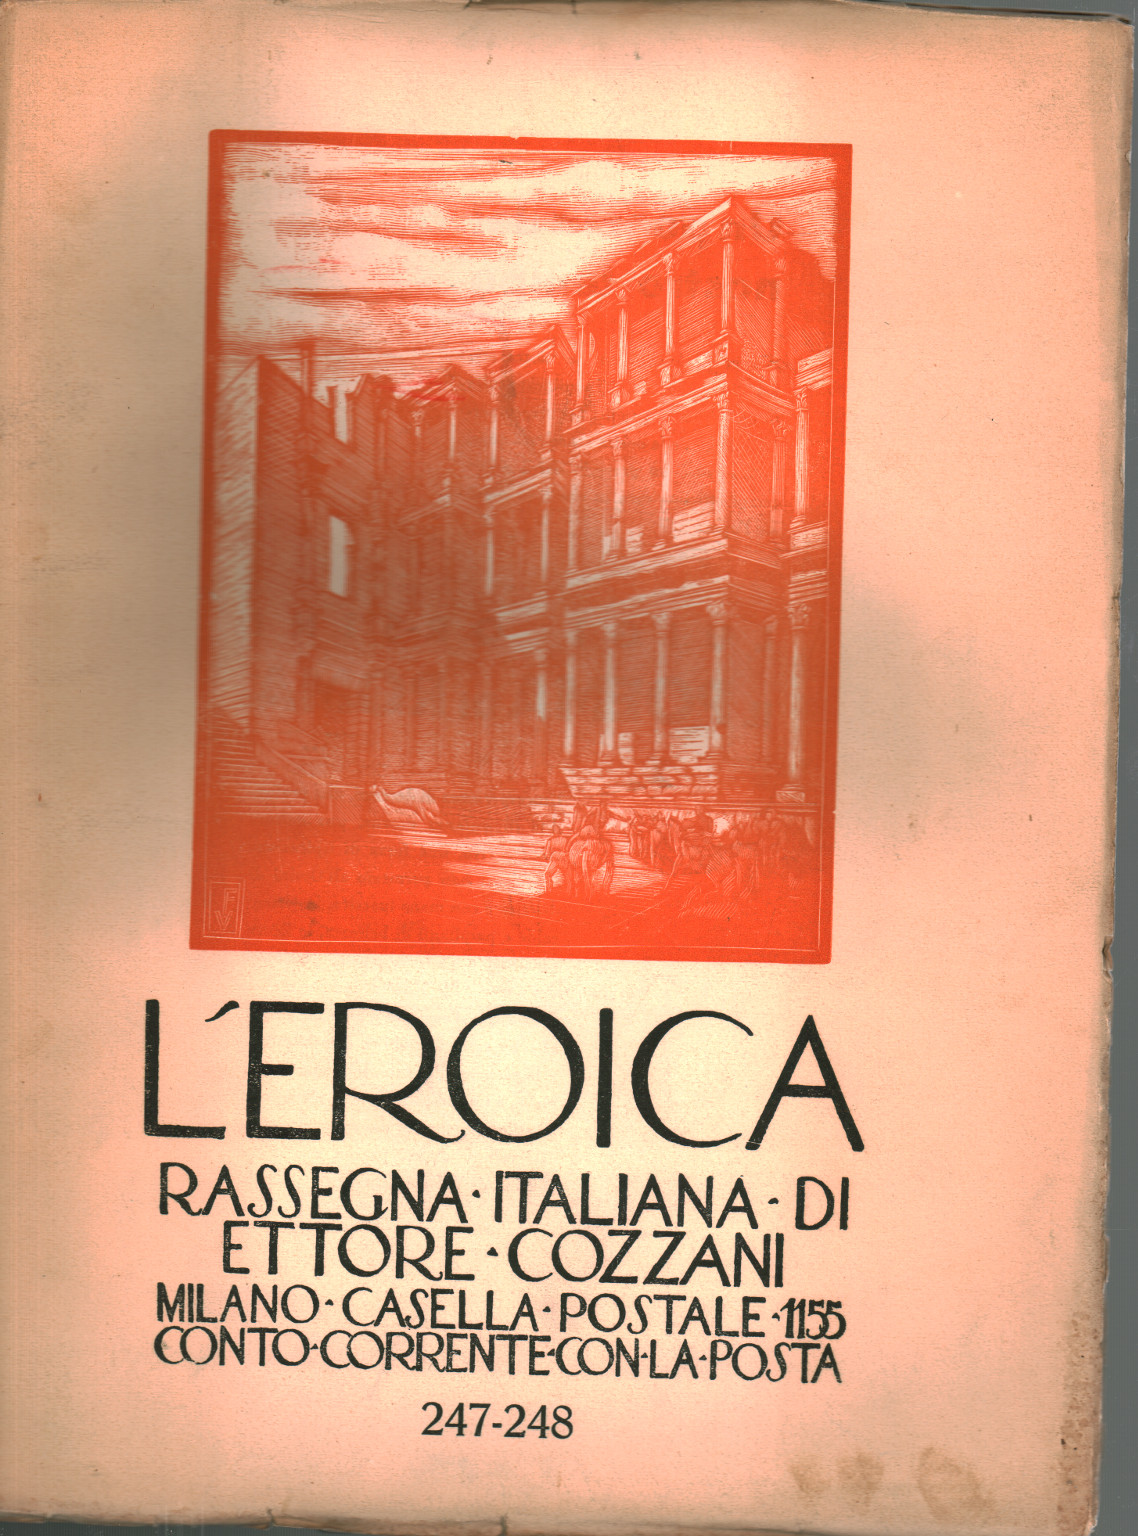 The heroic. Rassegna italiana di Ettore Cozzani. Ann, s.a.